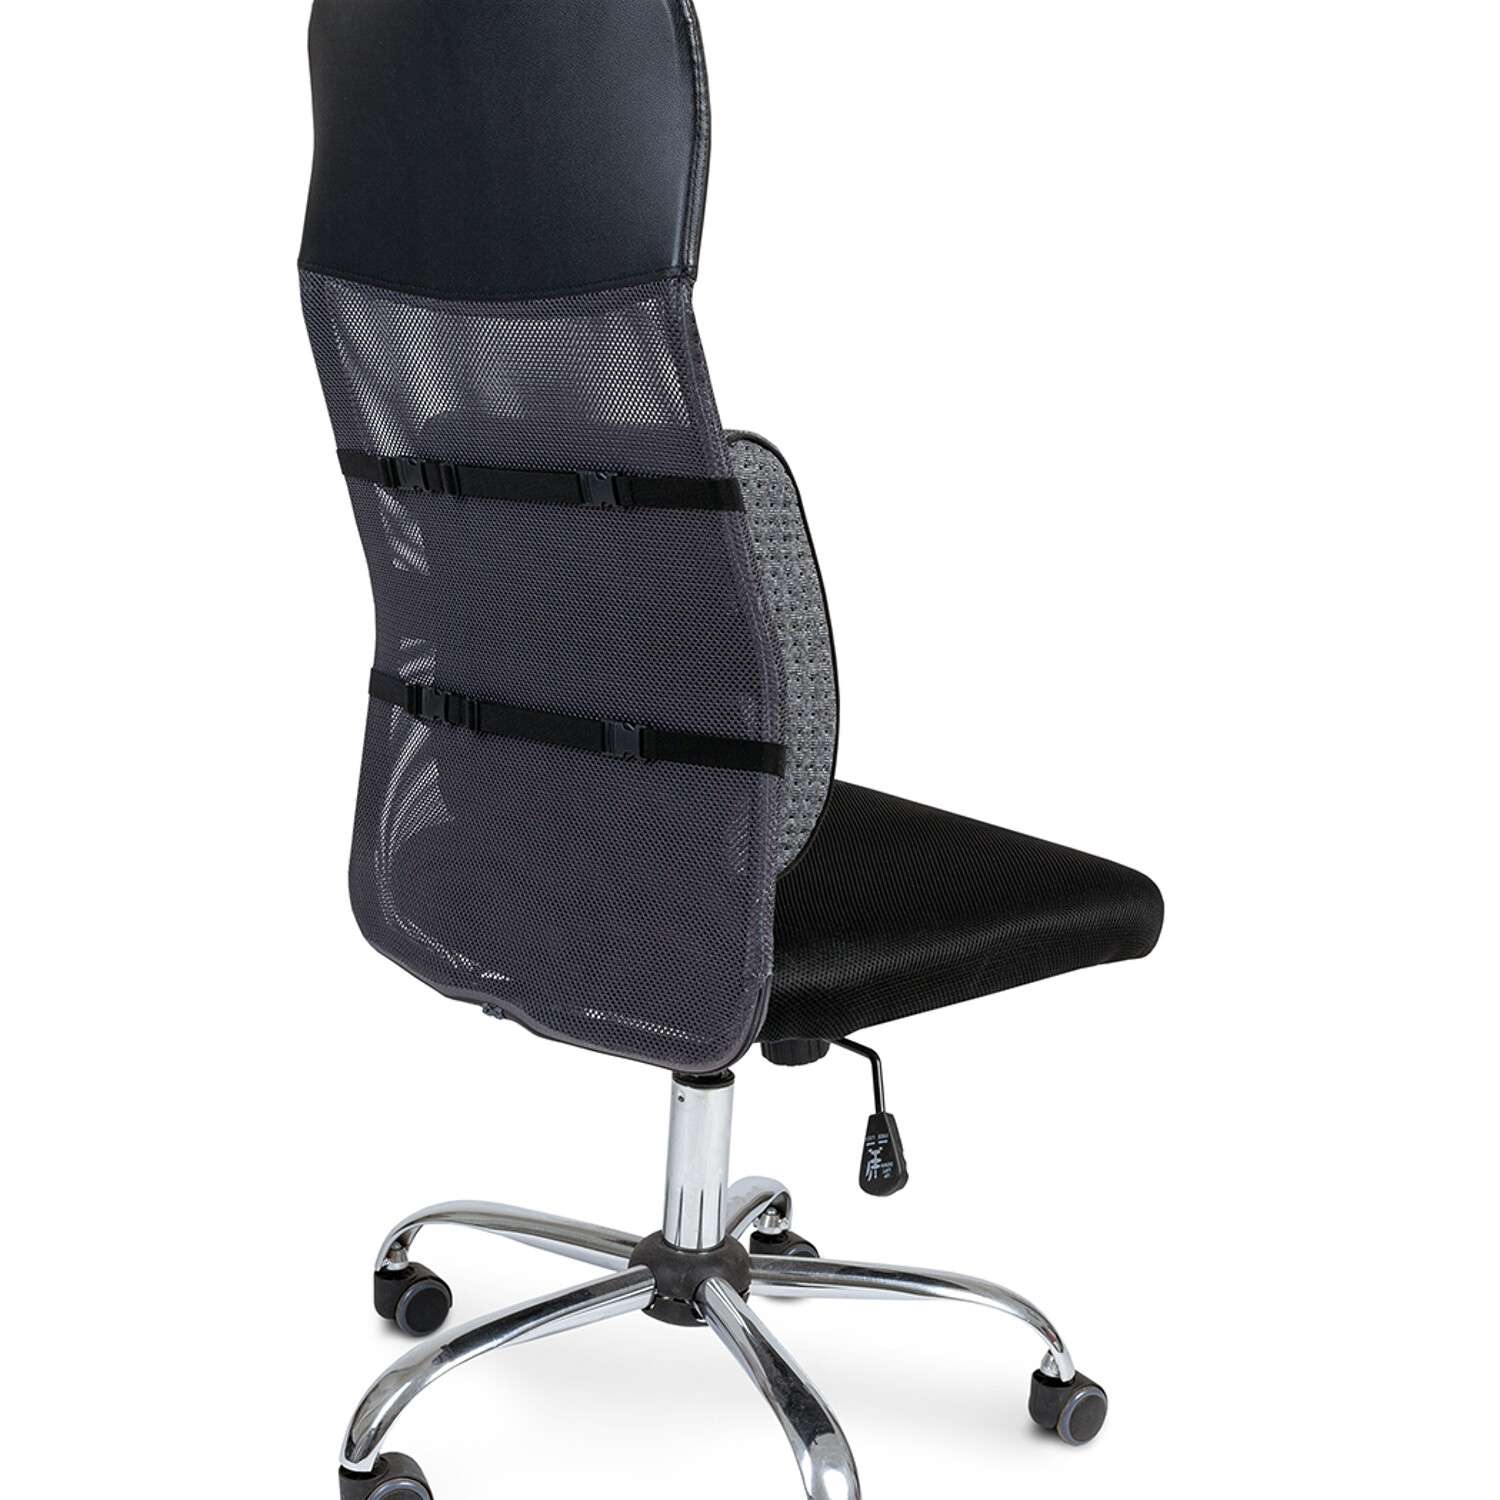 Ортопедическая подушка Ambesonne на стул под поясницу для спины на офисное кресло и в автомобиль - фото 7